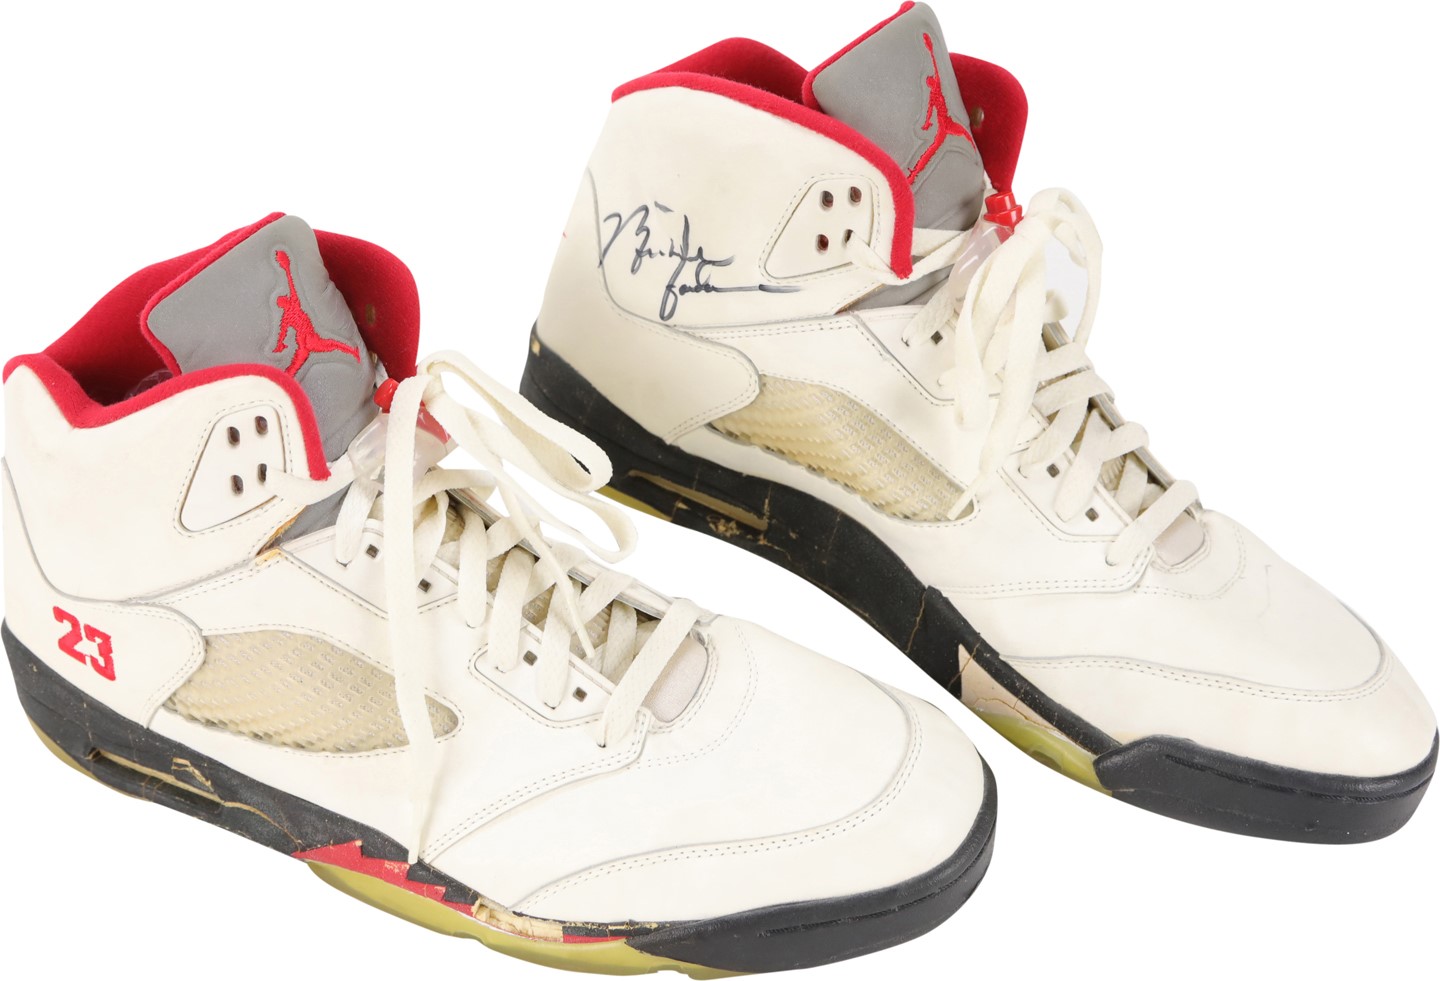 - Circa 1989 Michael Jordan Chicago Bulls Signed Game Worn Sneakers (PSA)